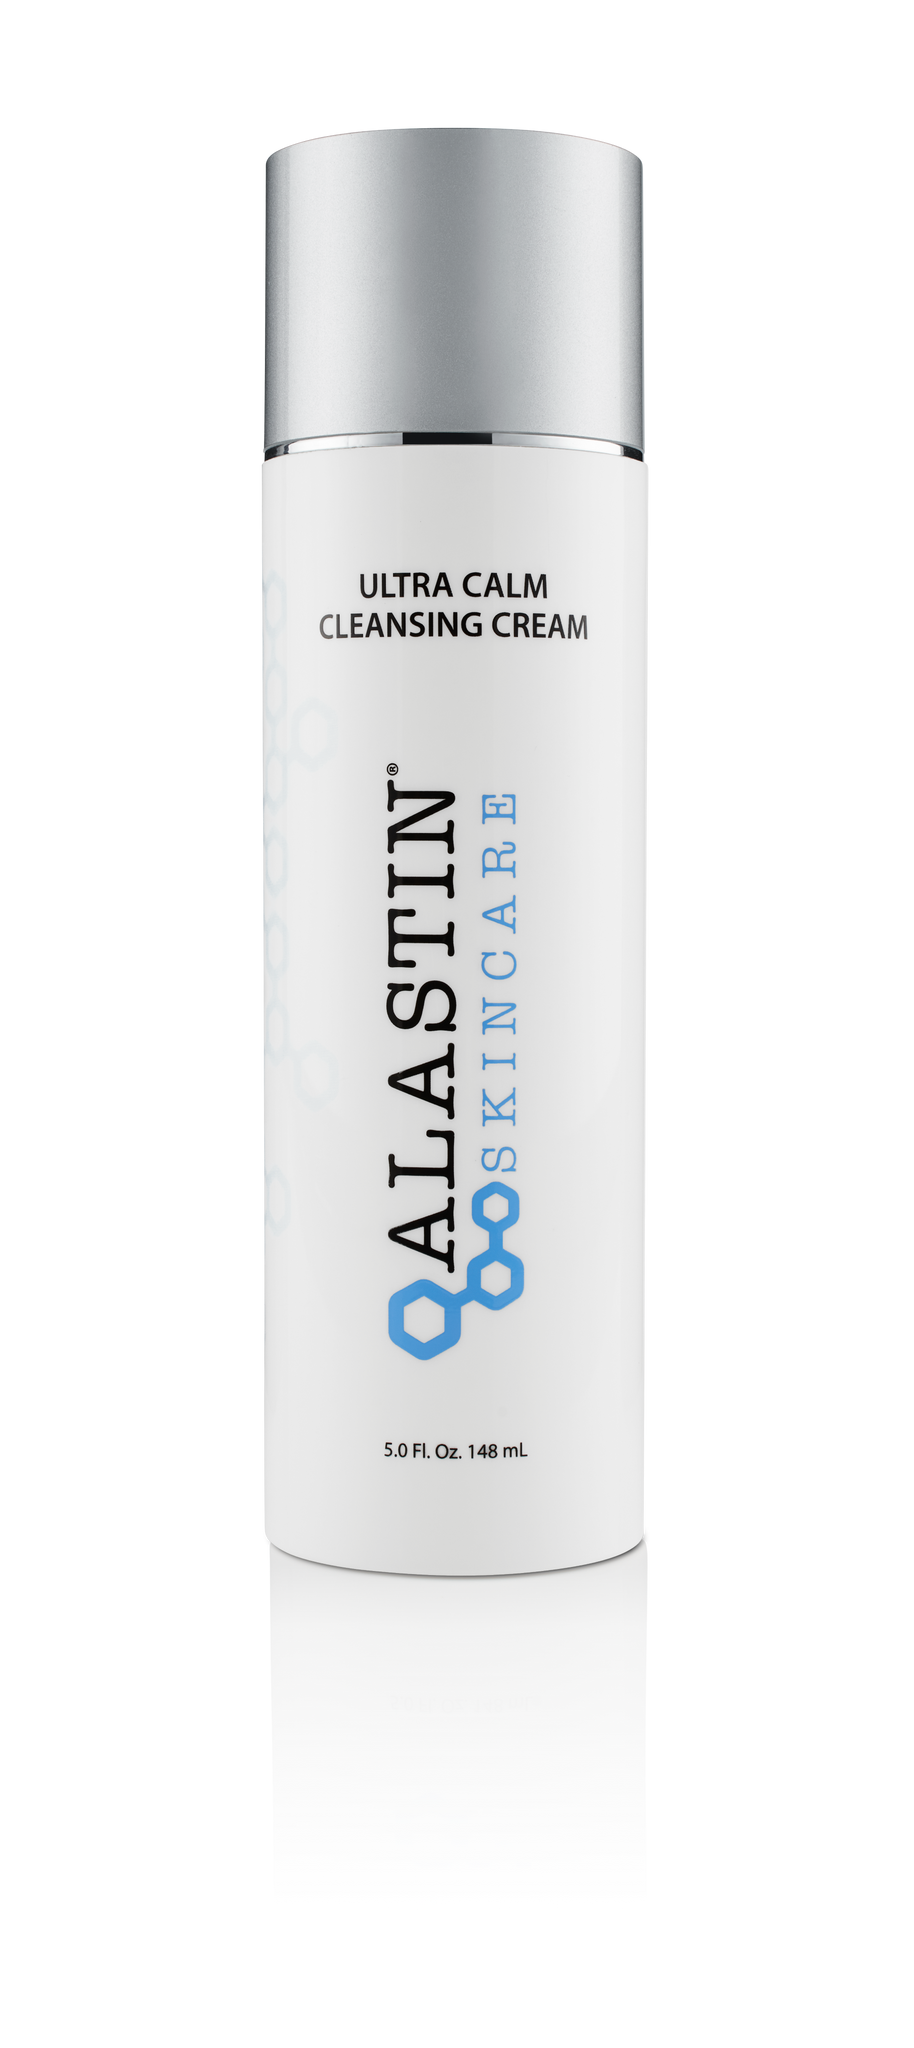 Ultra Calm Cleansing Cream